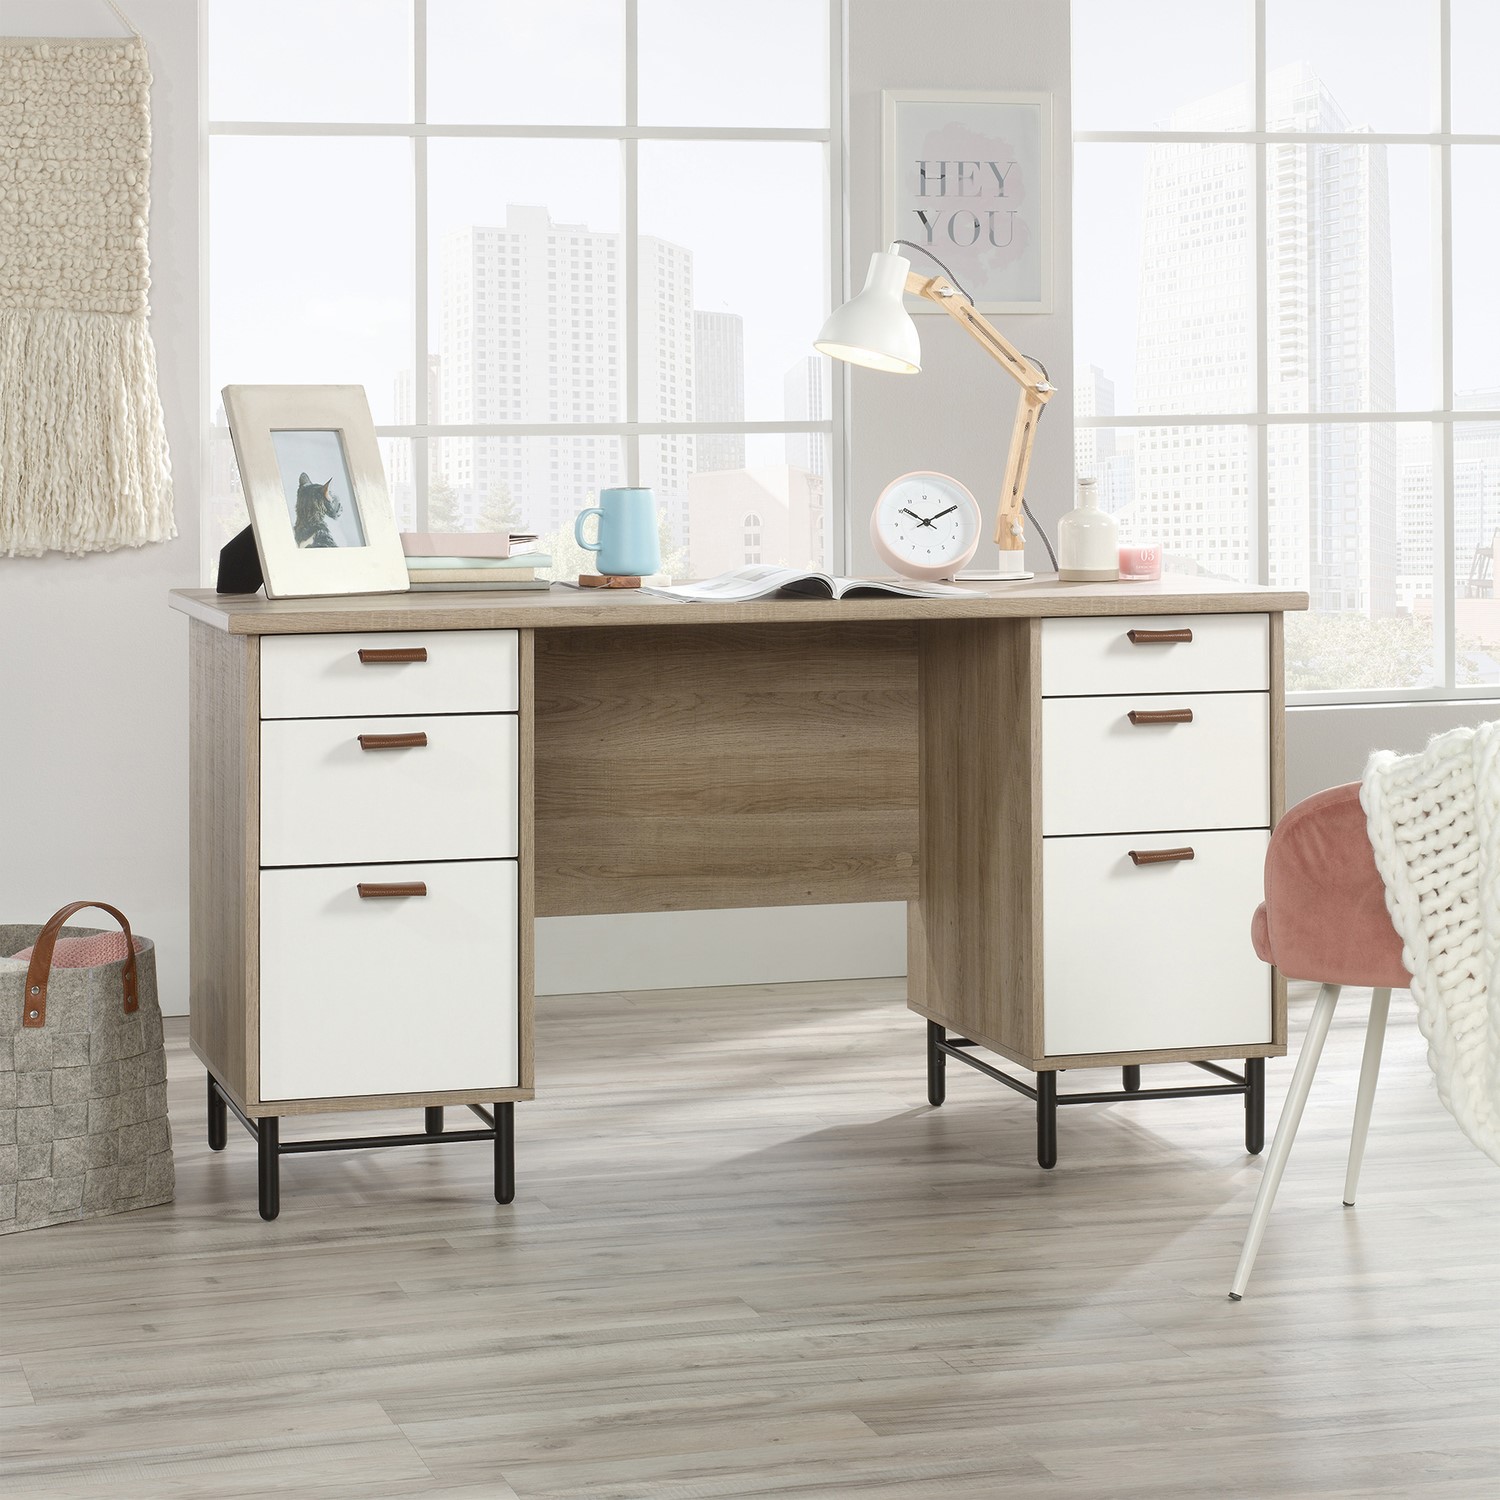 Photo of Oak effect desk with drawers - teknik office